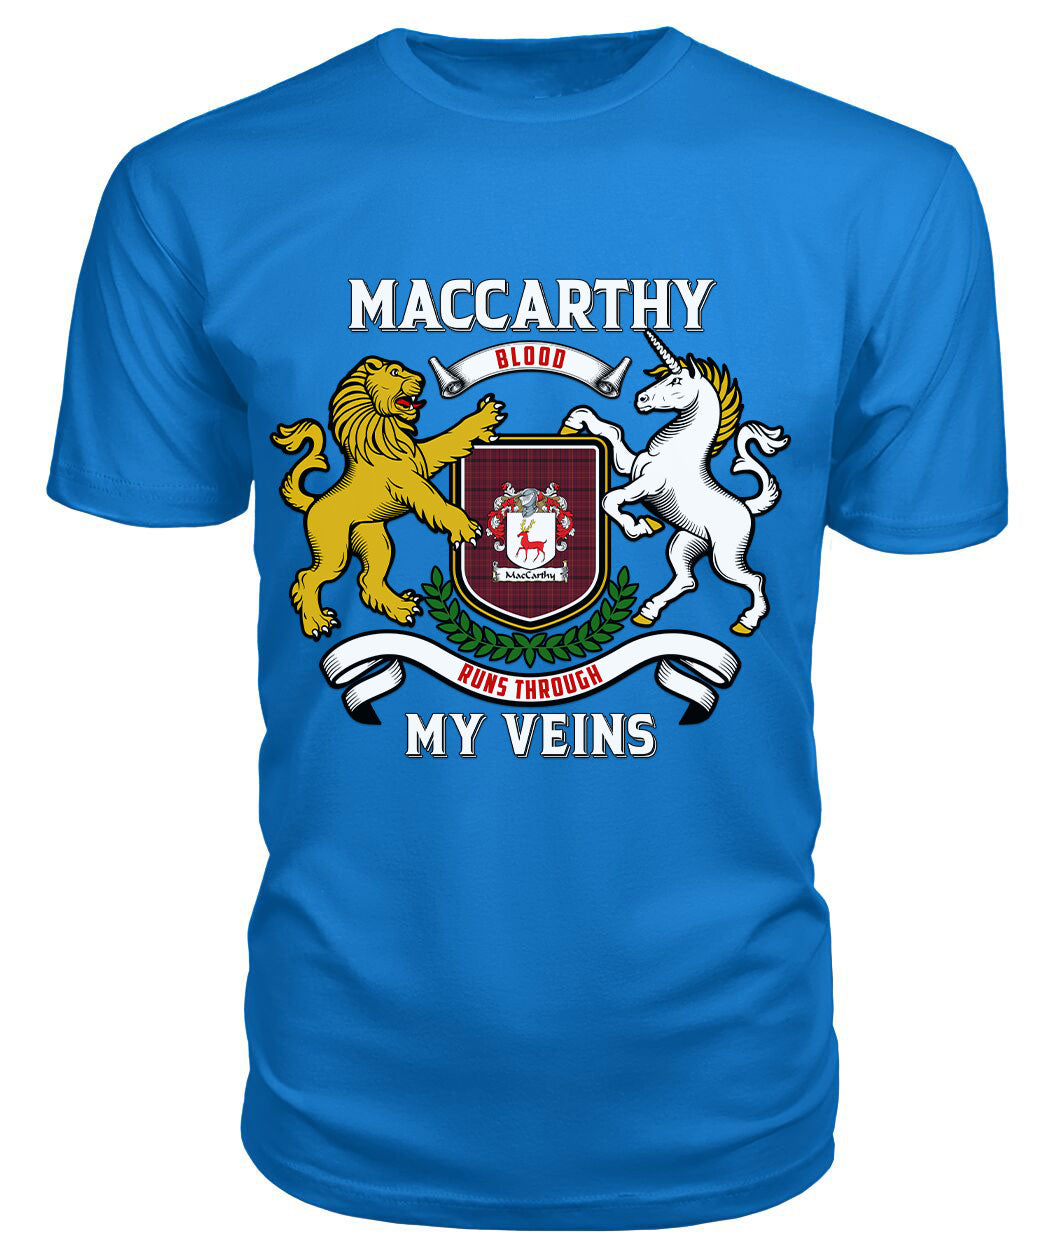 MacCarthy Tartan Crest 2D T-shirt - Blood Runs Through My Veins Style